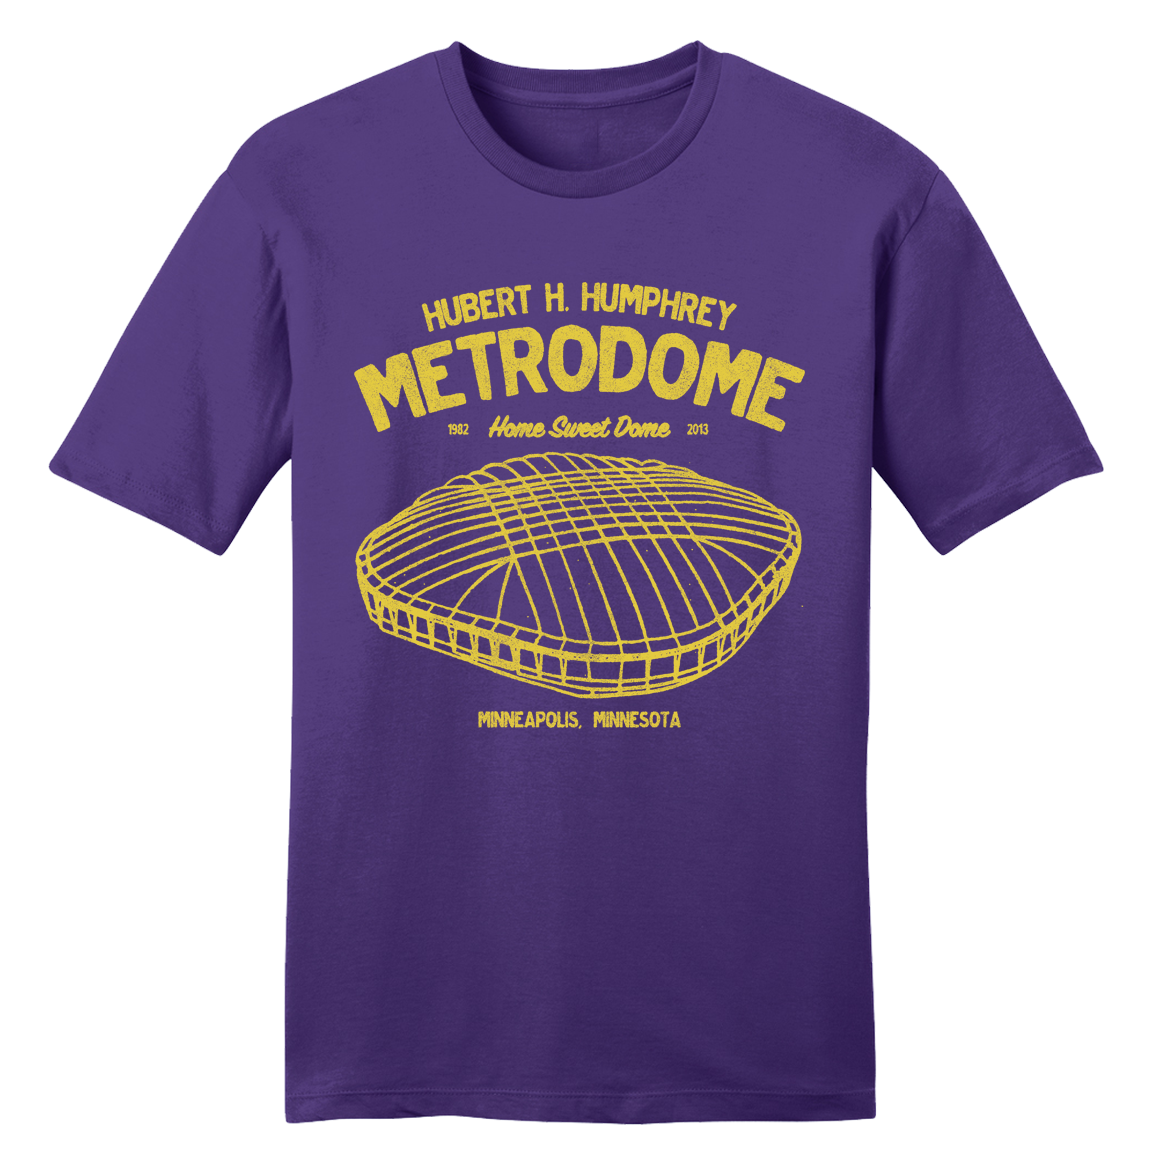 The Metrodome - Football tee